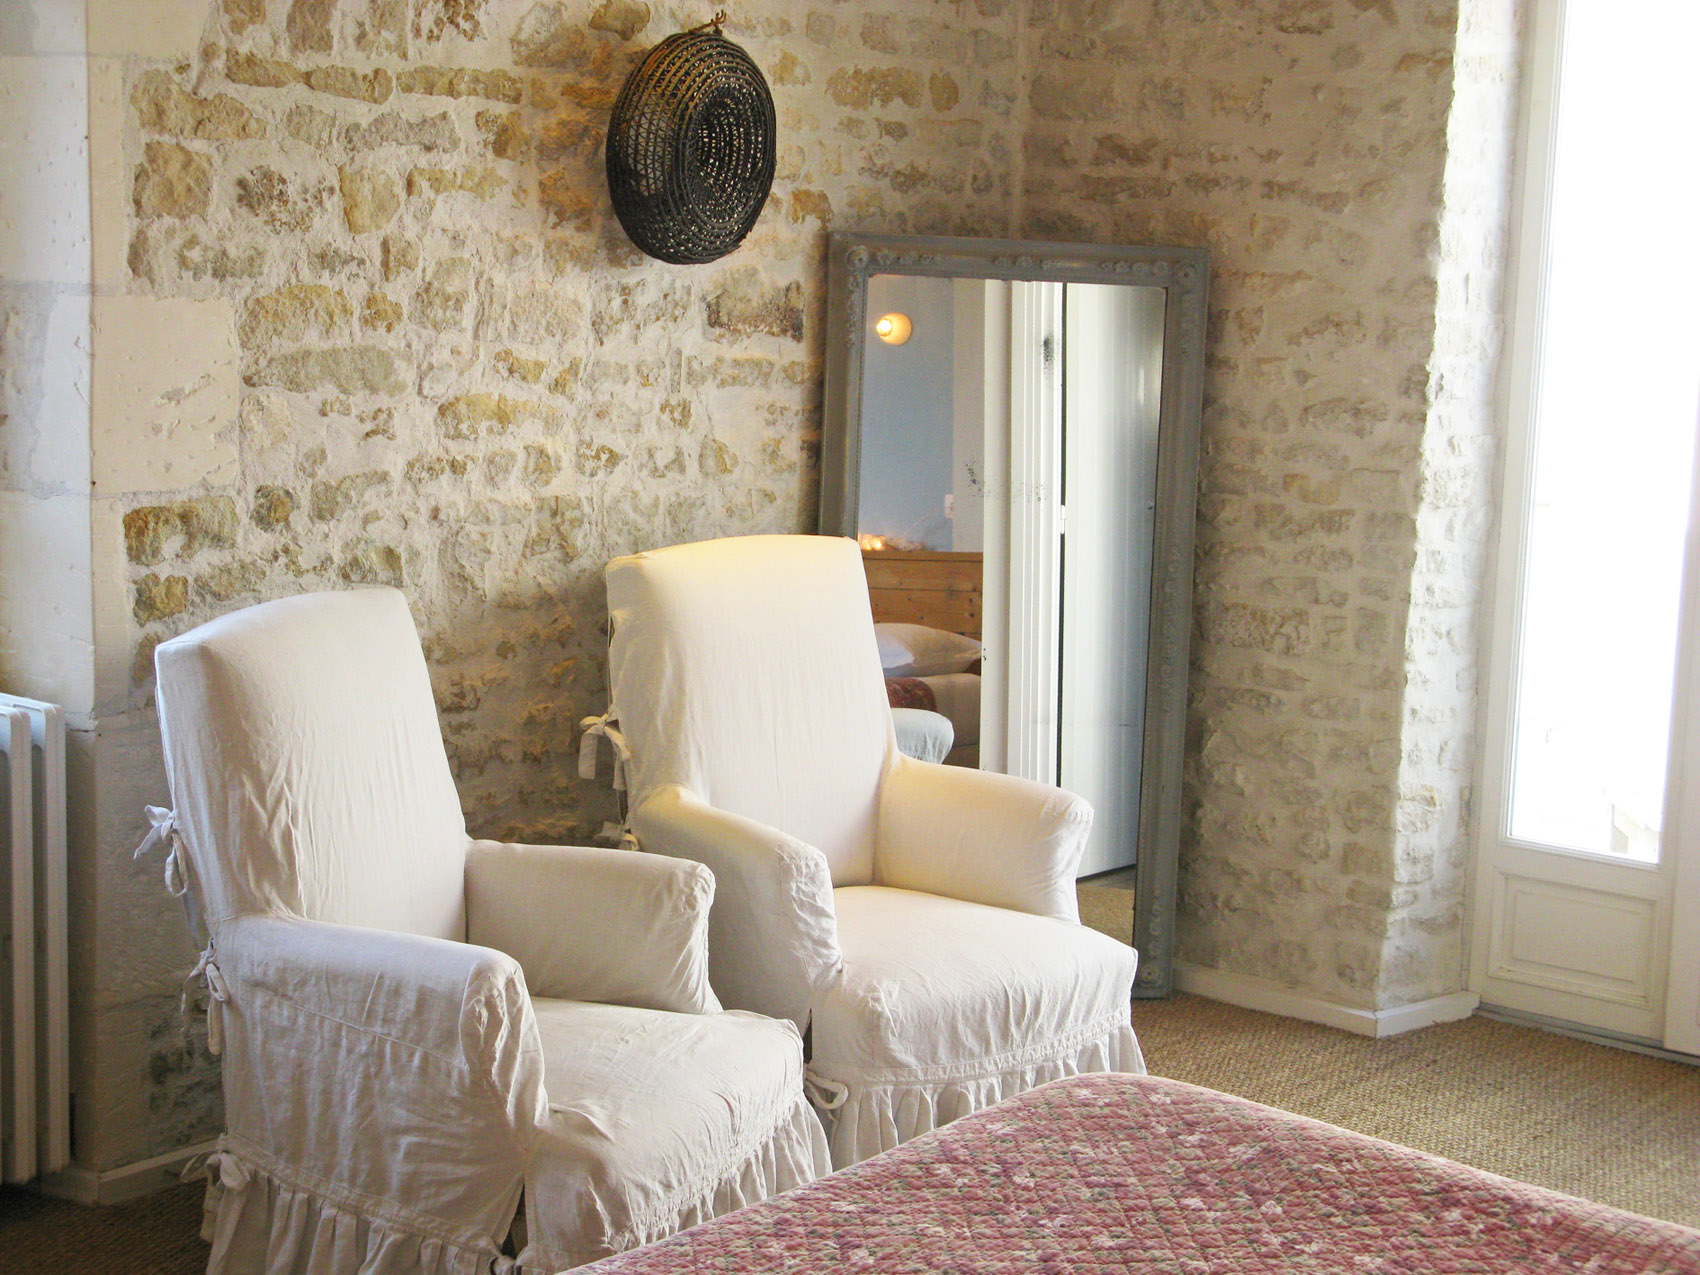 Armchair in comfort room - Hotel 3 * Le Senechal Ile de Ré